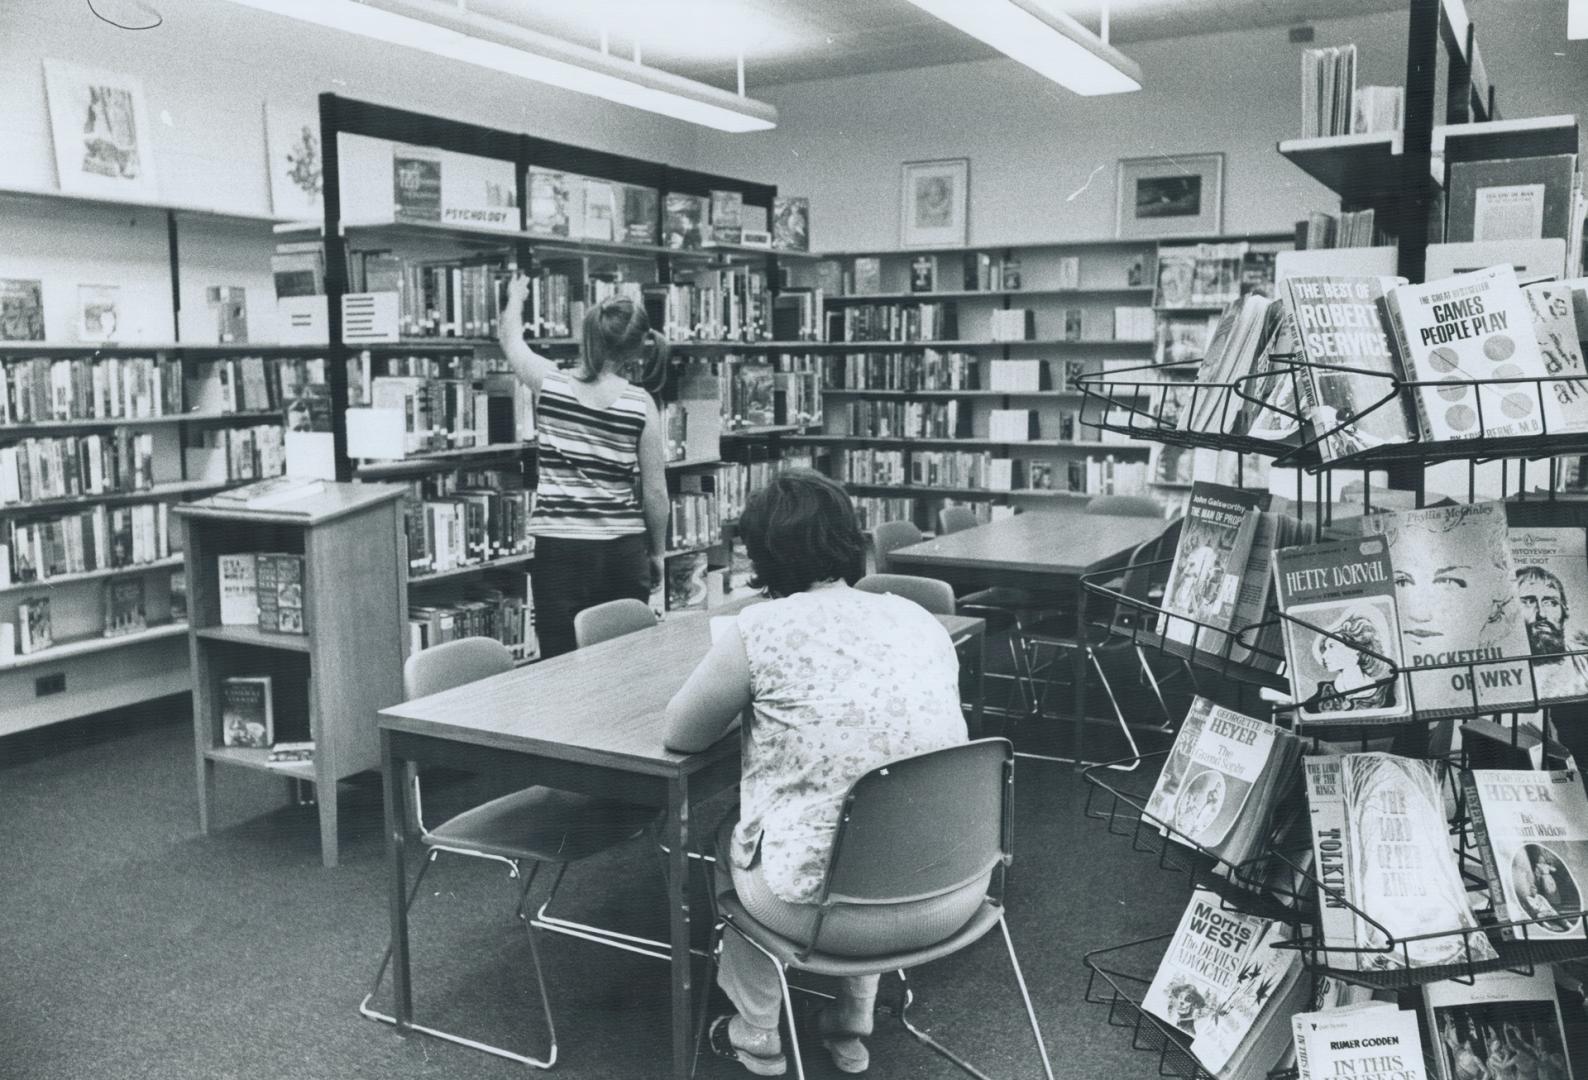 Vanier centre for Women Library